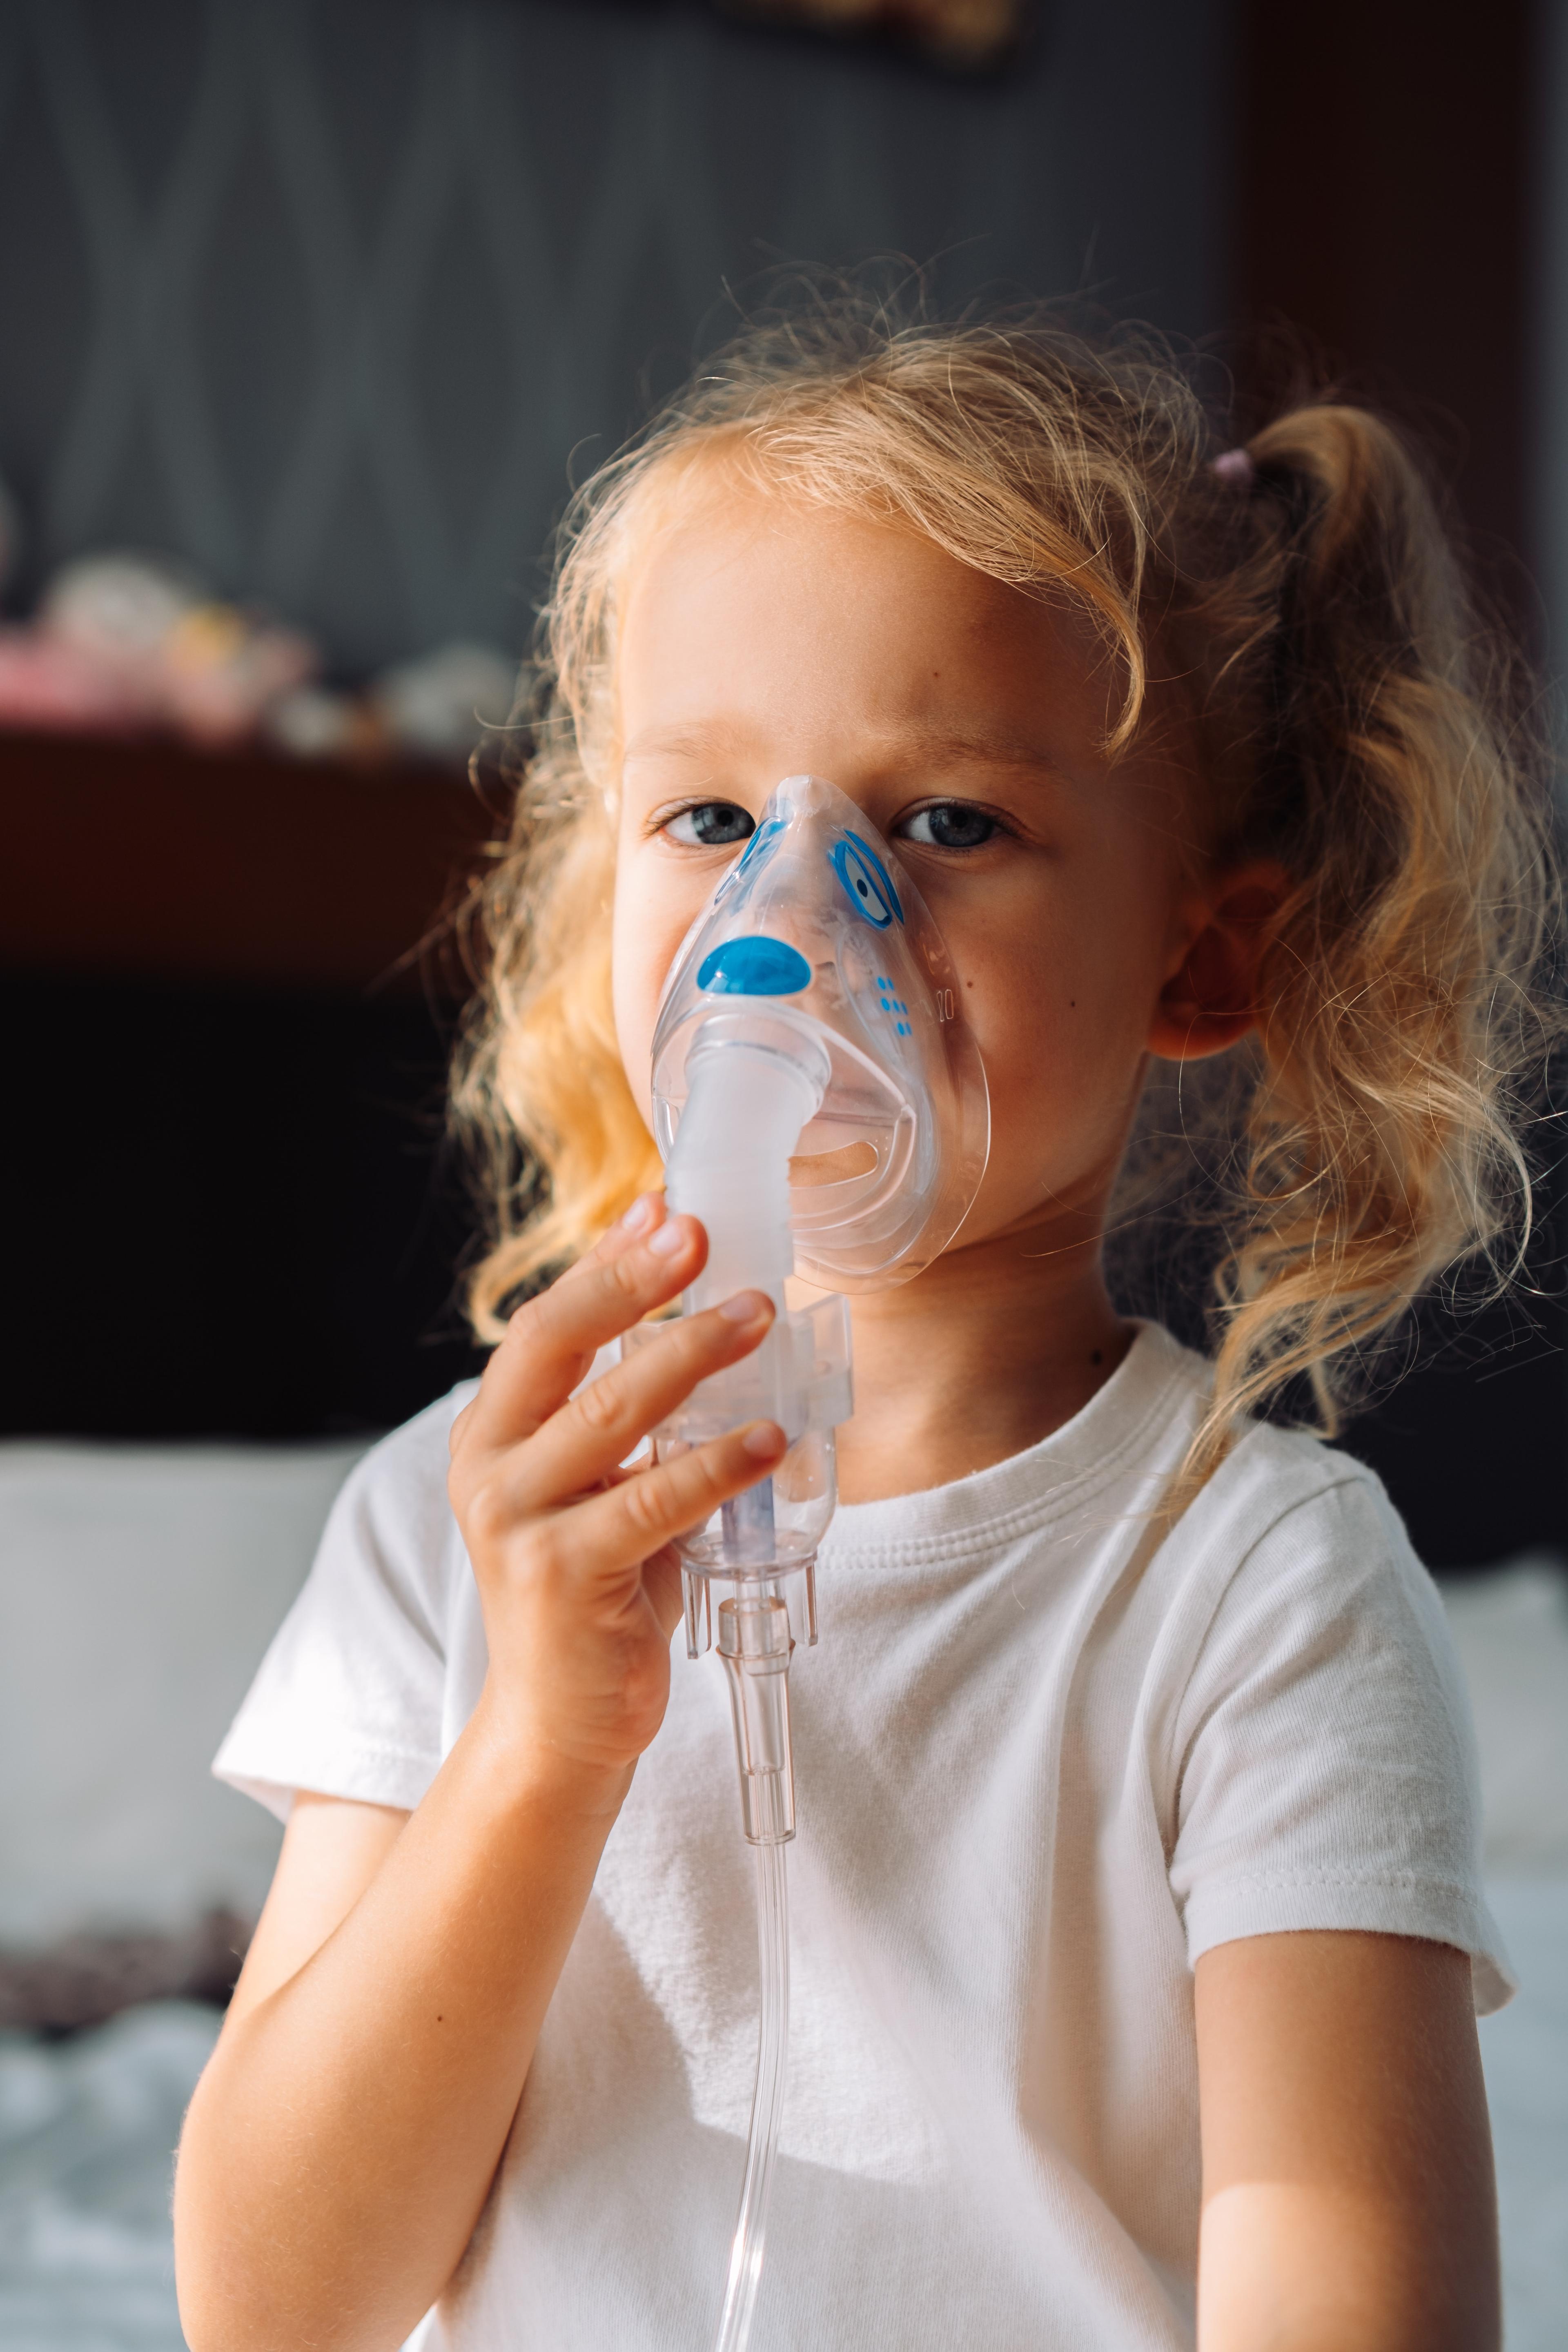 Astma oskrzelowa u dzieci: objawy, przyczyny i metody leczenia. Astma u dzieci – rodzaje, profilaktyka, leczenie. Objawy astmy u dzieci